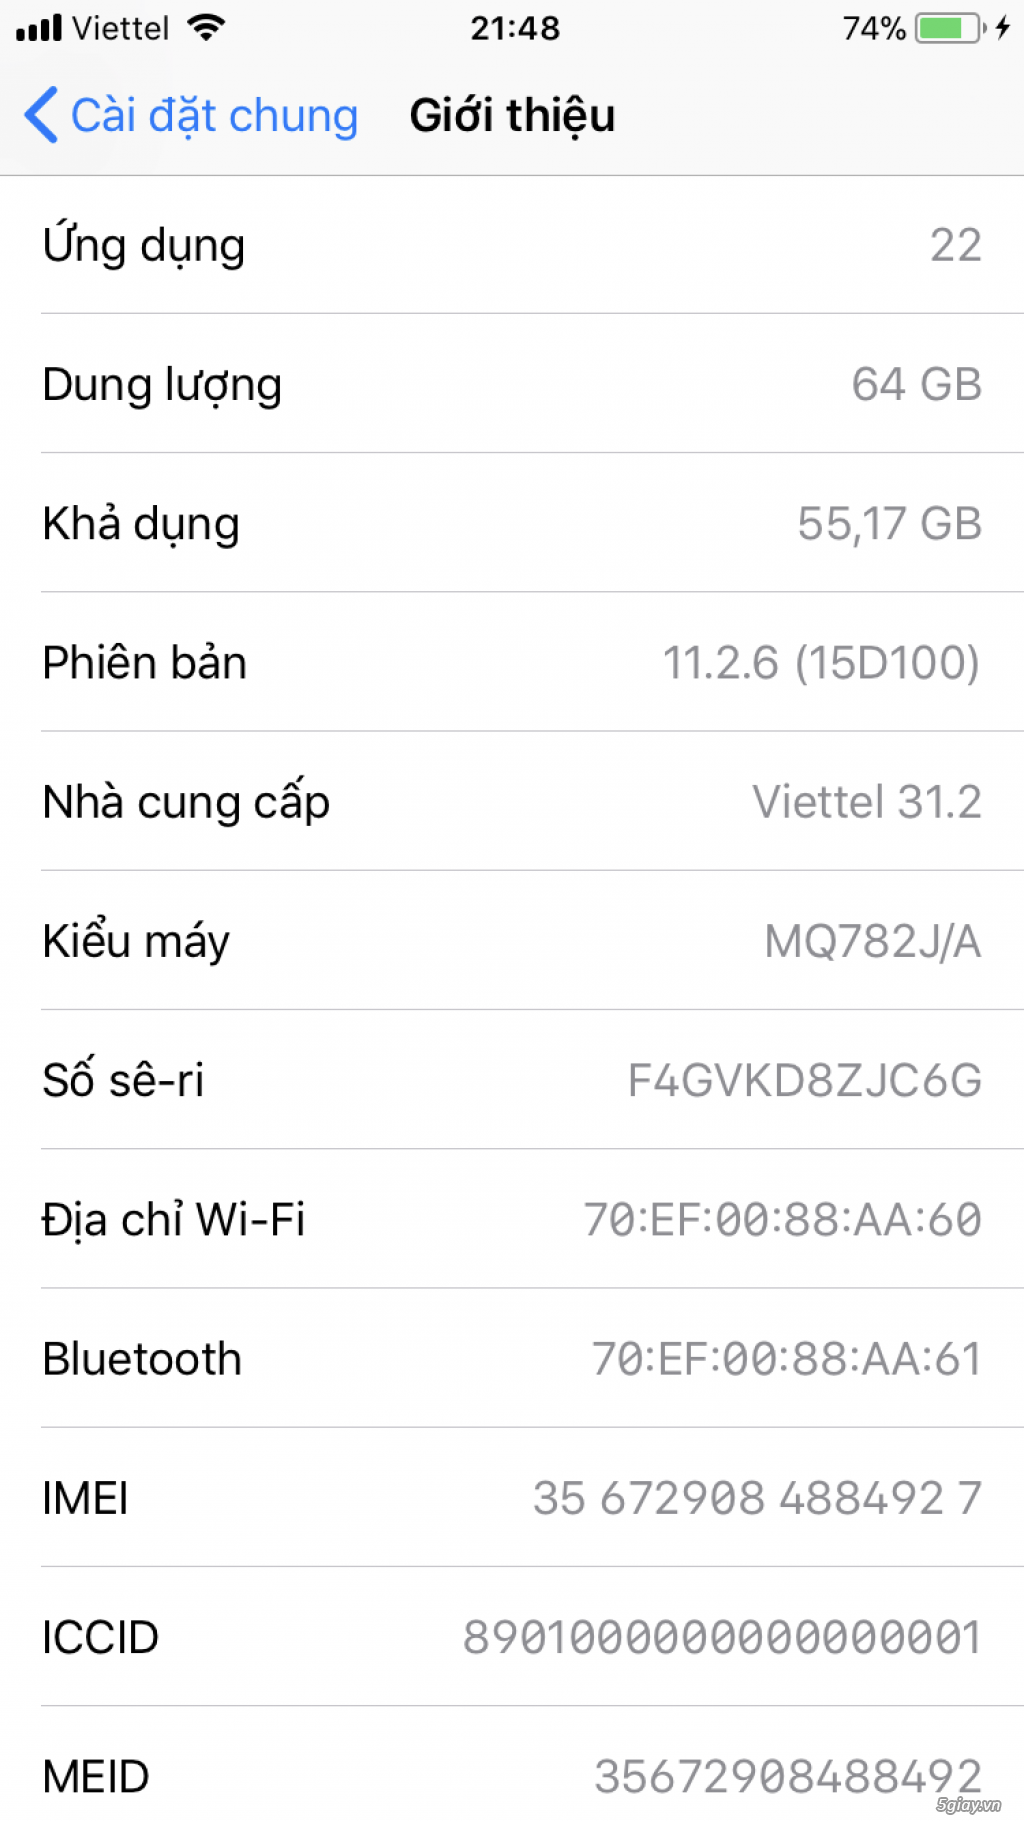 Iphone8 gray 64gb lock nhật hàng xách tay - 2